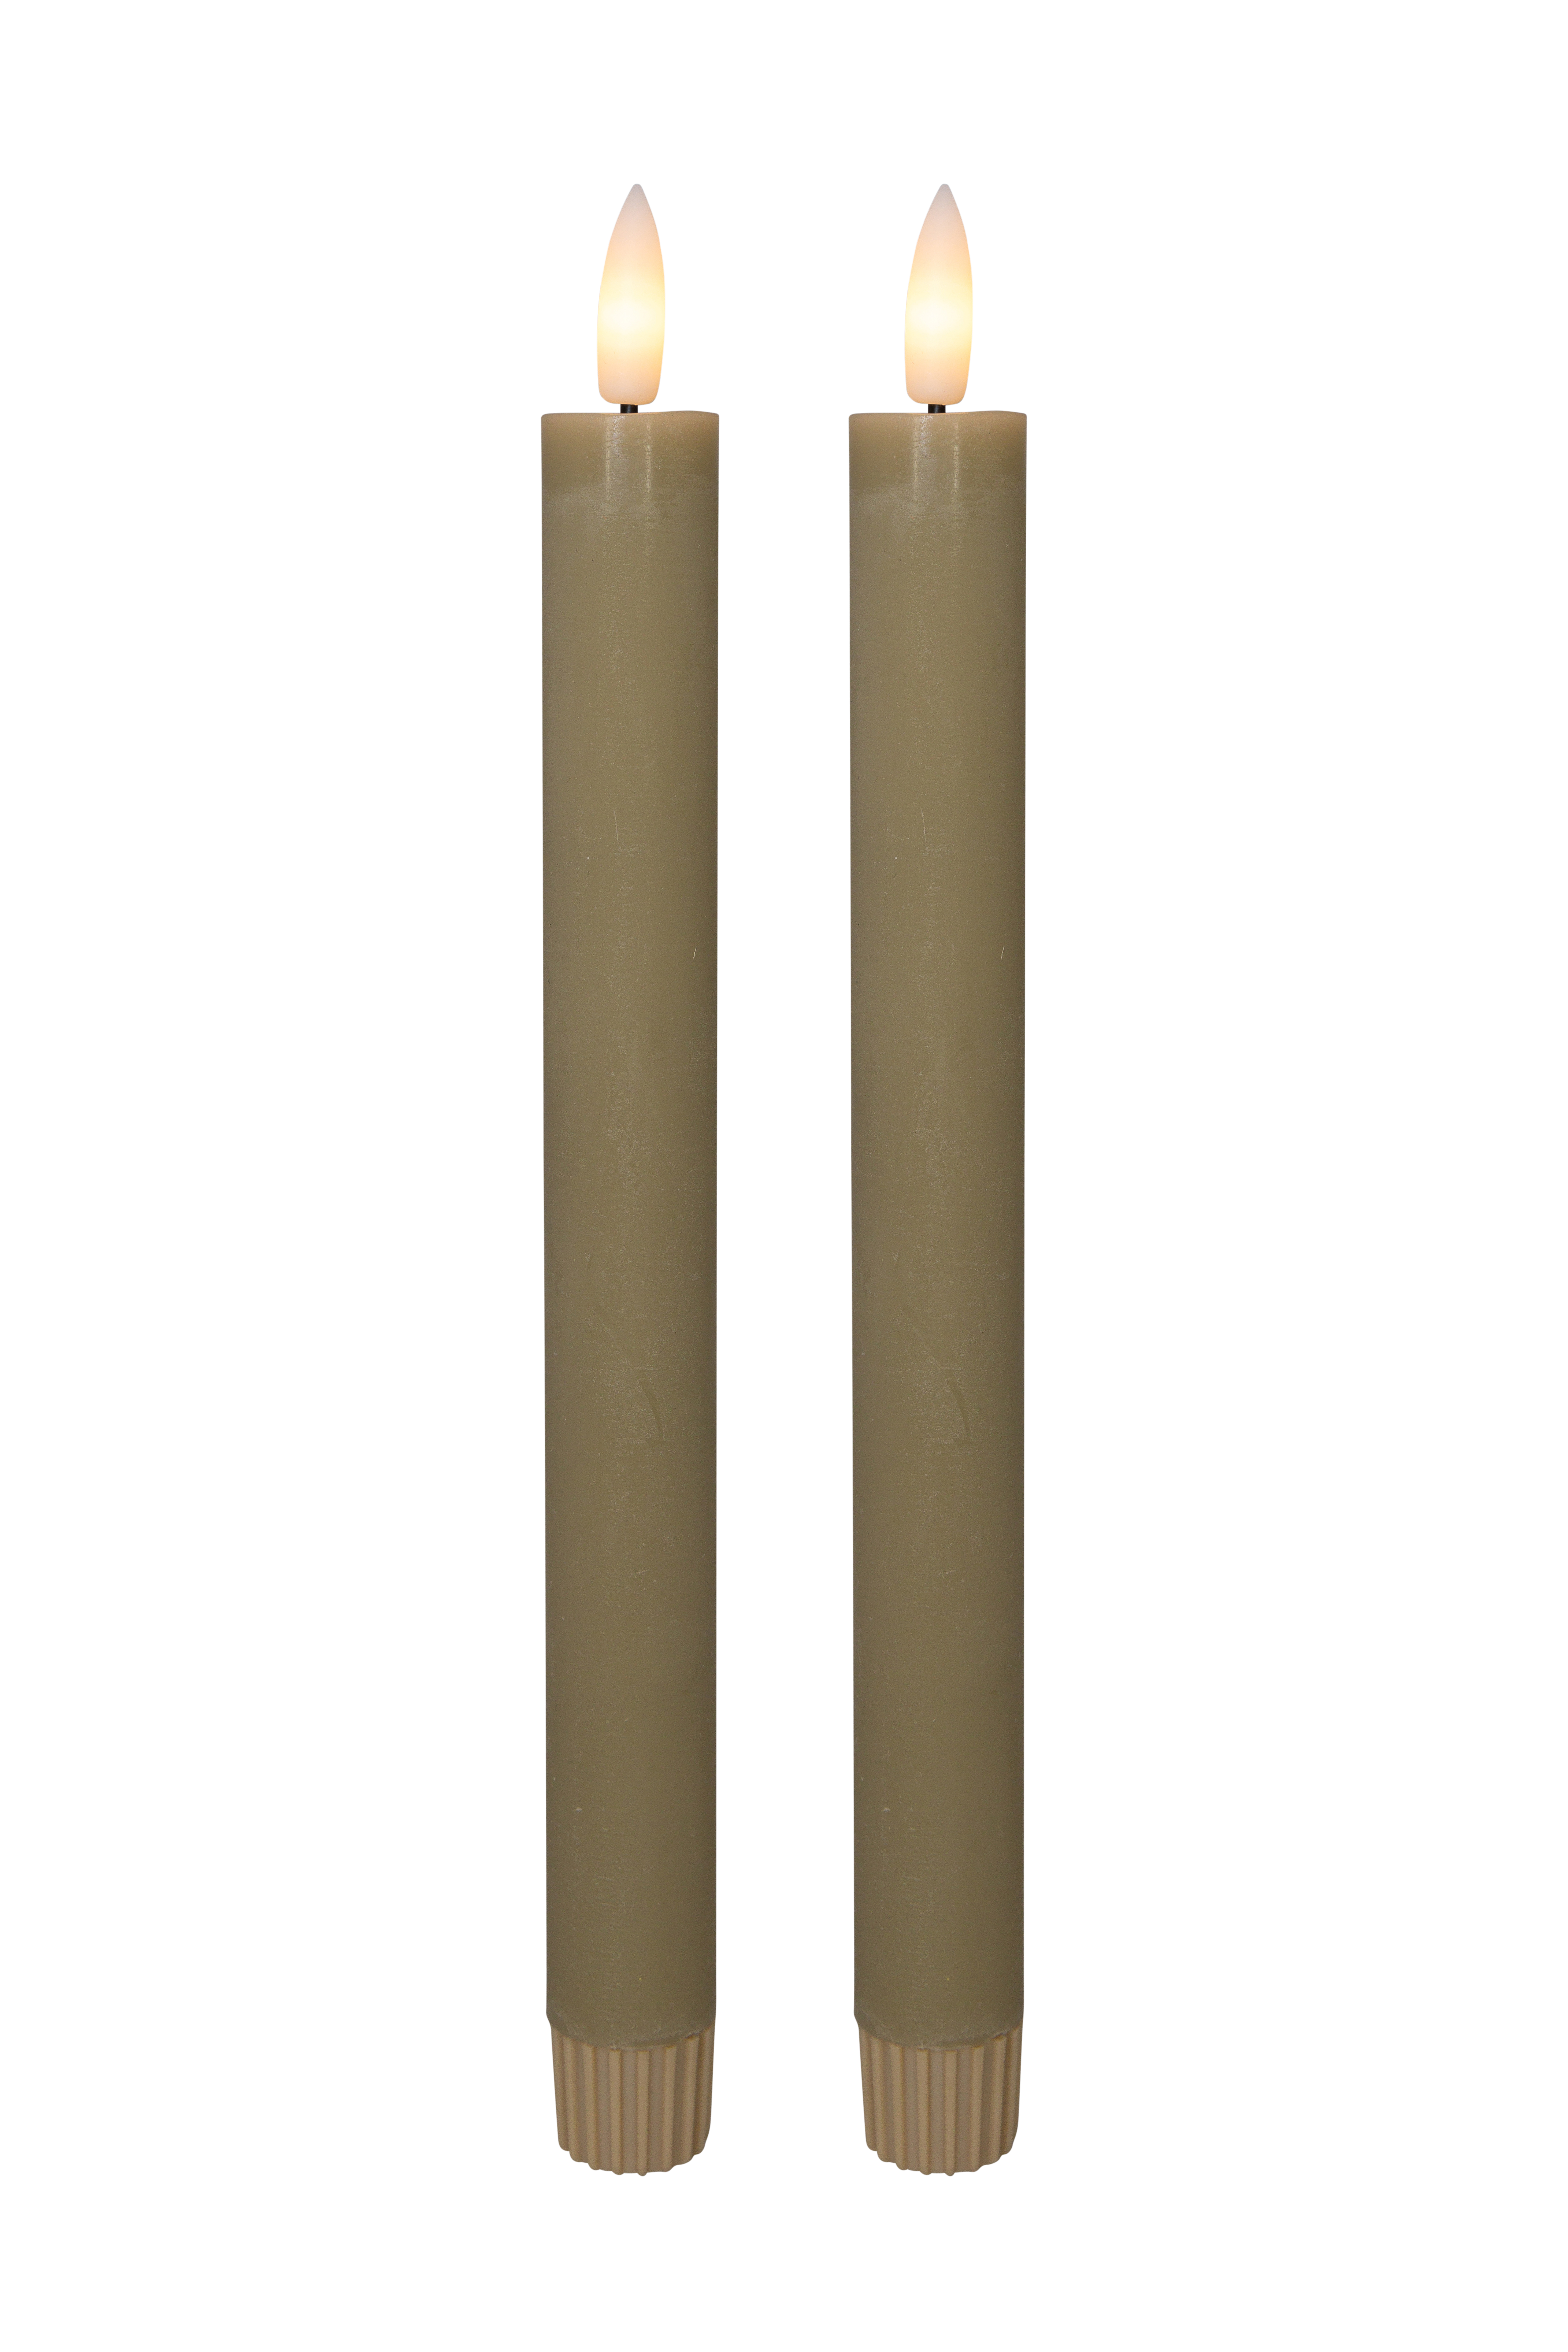 Cozzy kronelys, 3D flamme, 22,2 cm, sand, 2 stk (bruges med fjernbetjening) thumbnail